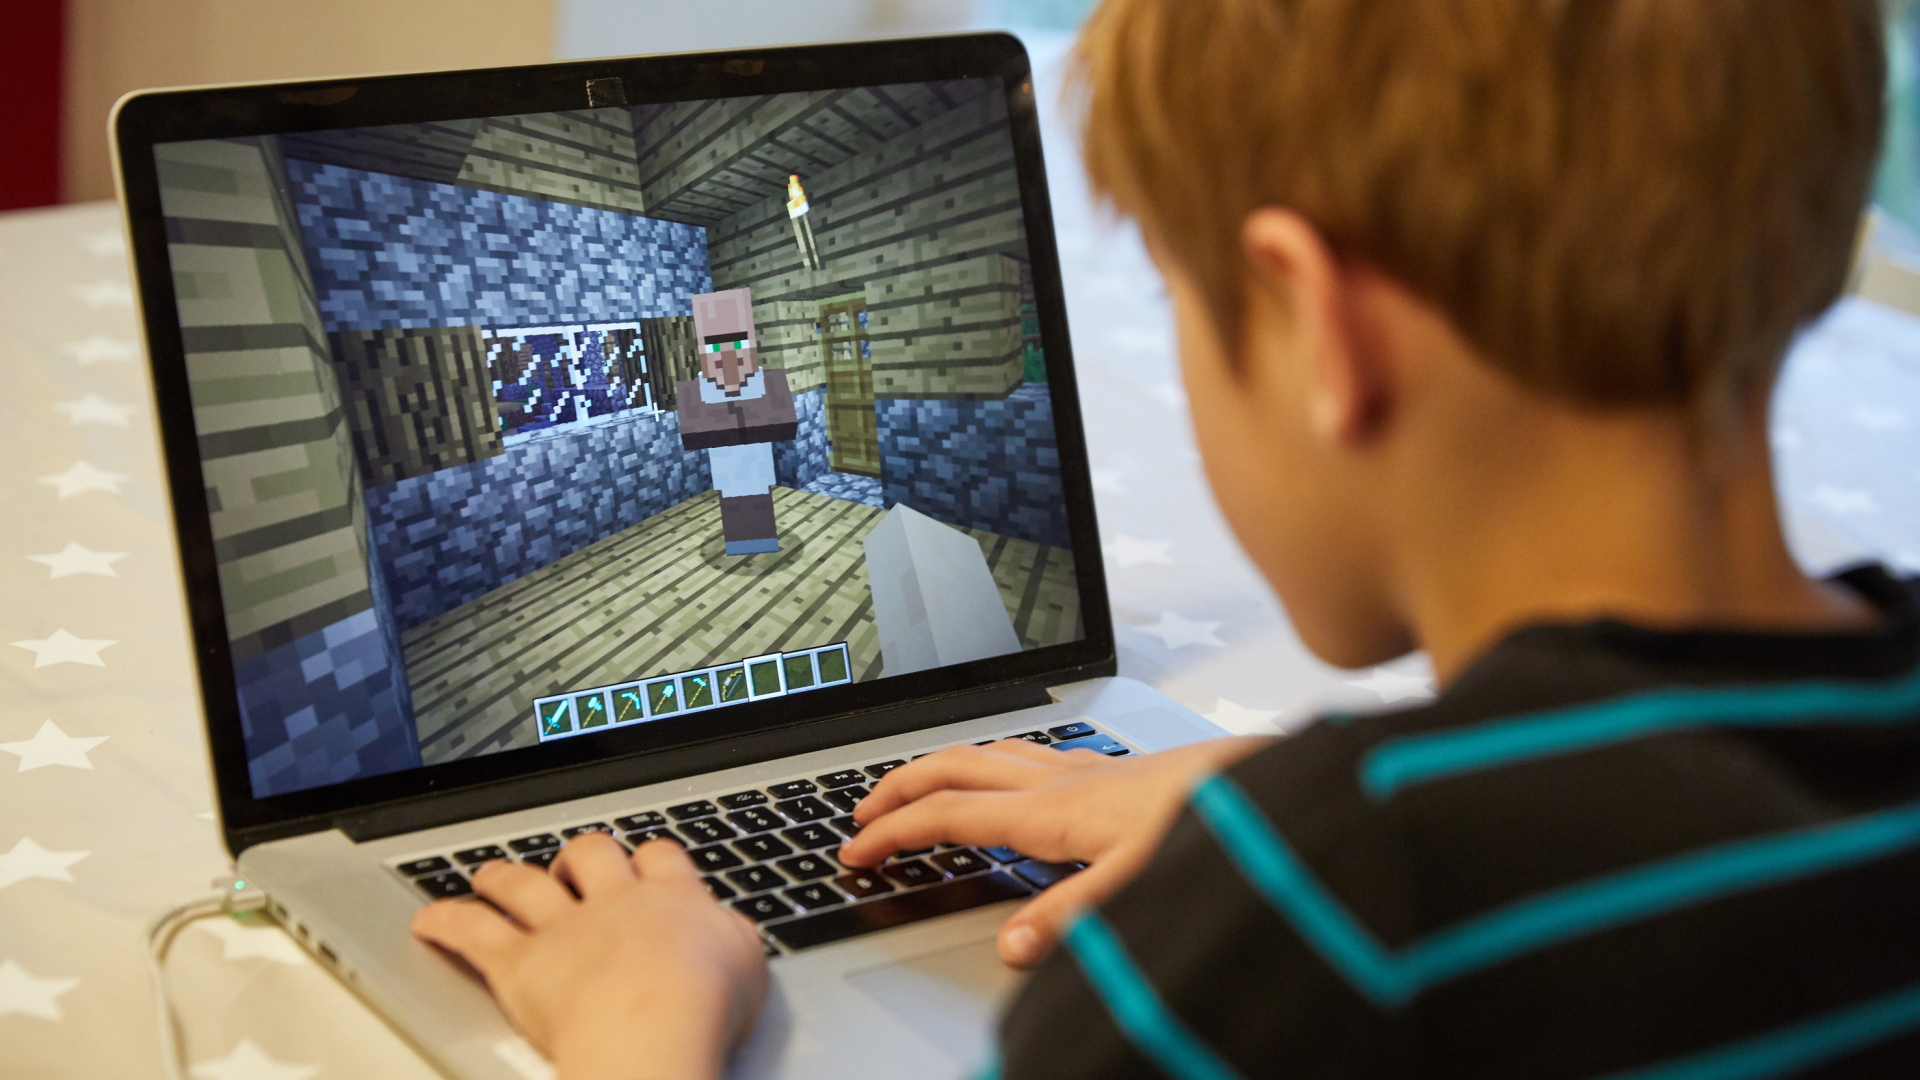 Ein Kind spielt an einem Laptop Minecraft.